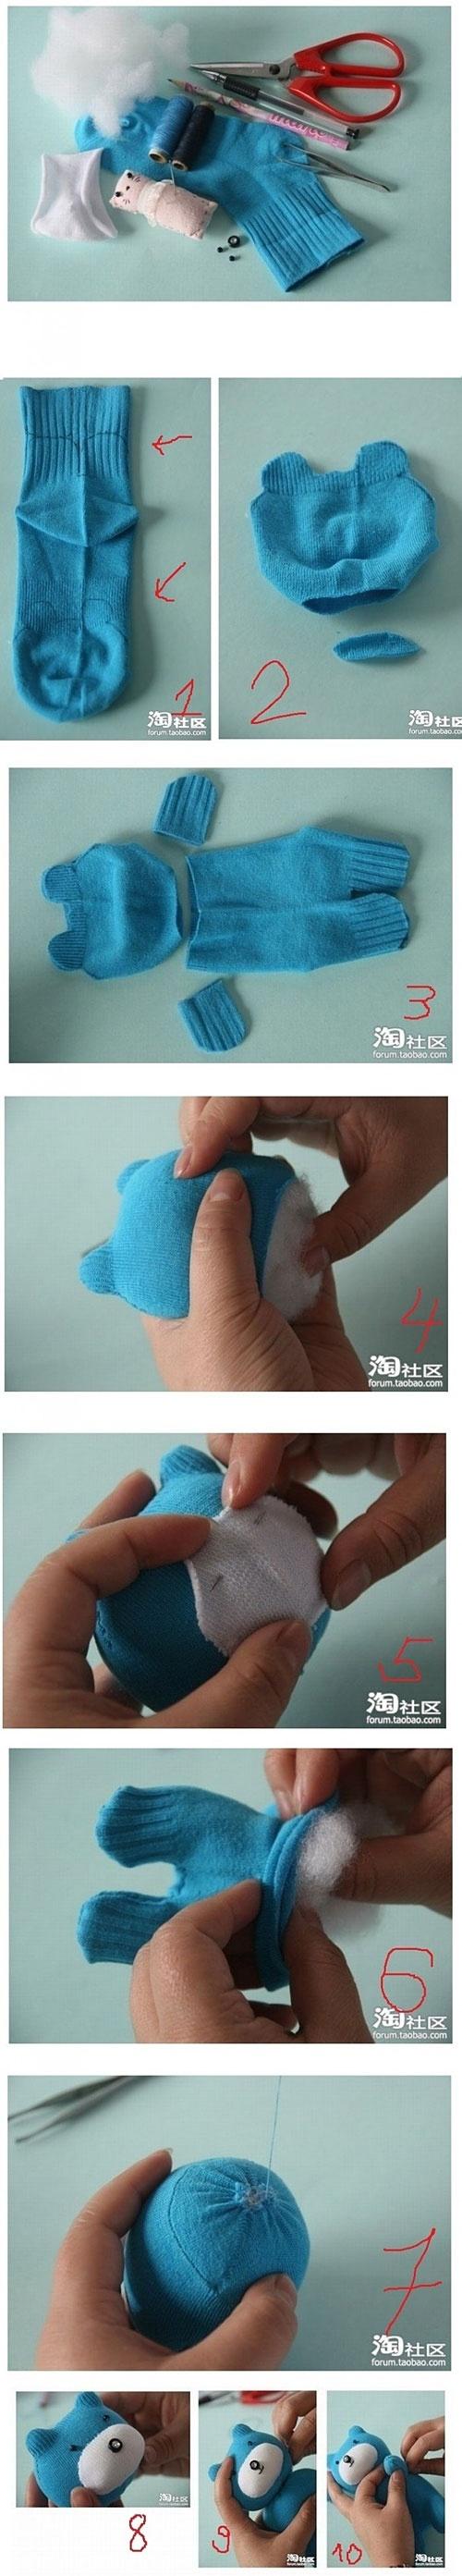 Cómo hacer muñecos con calcetines y guantes